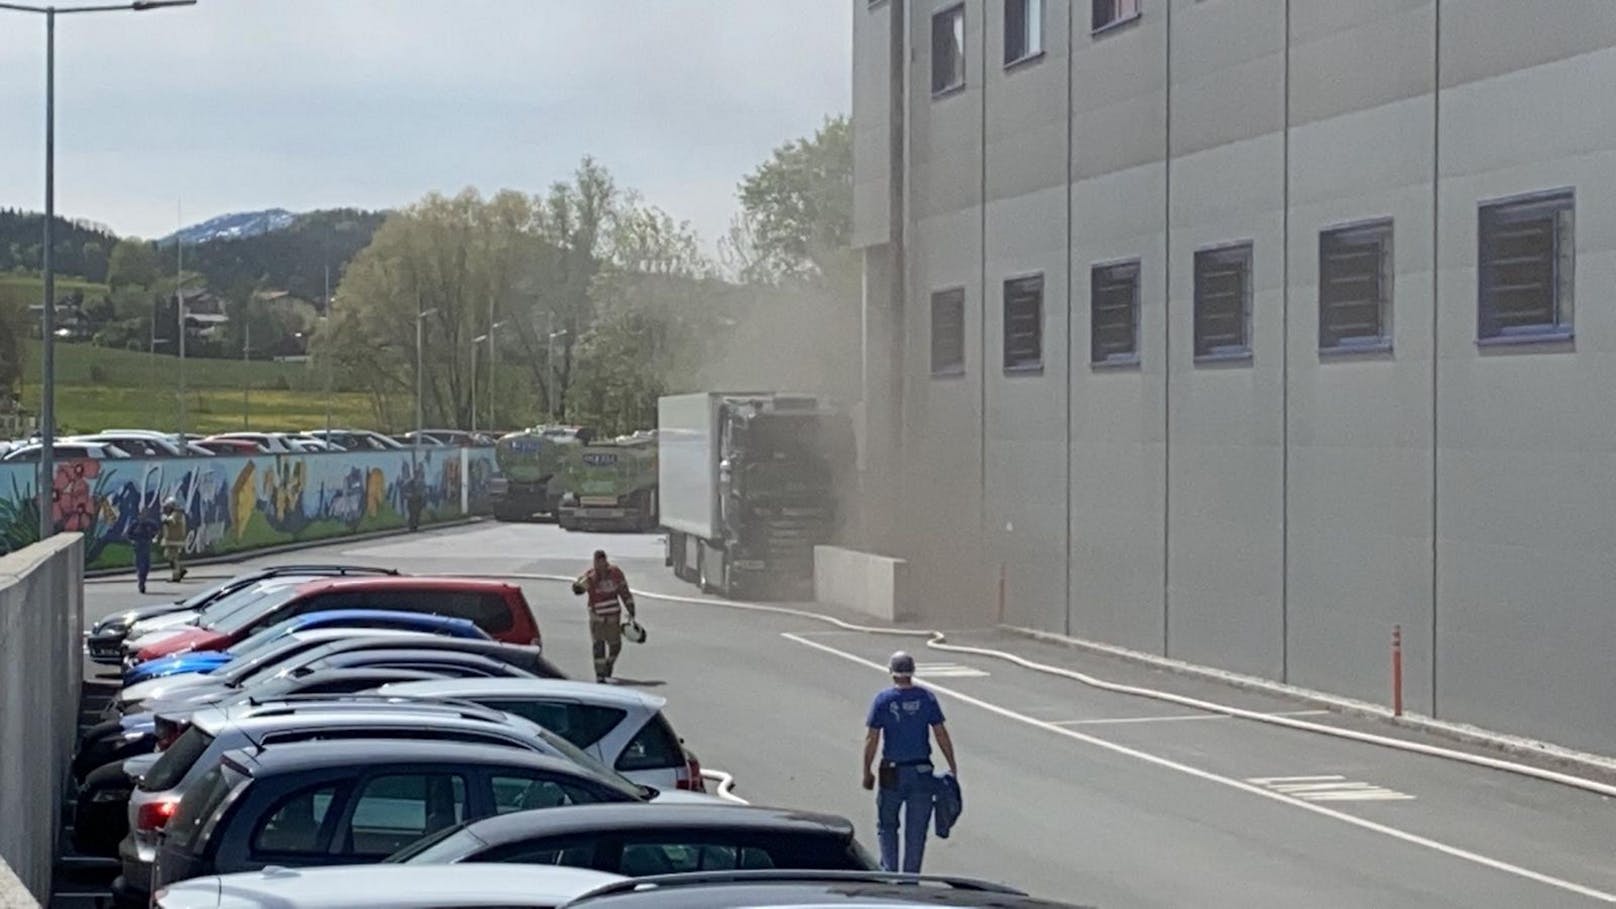 In der Käserei Woerle in Henndorf (Flachgau) ist am Freitag ein Brand ausgebrochen.